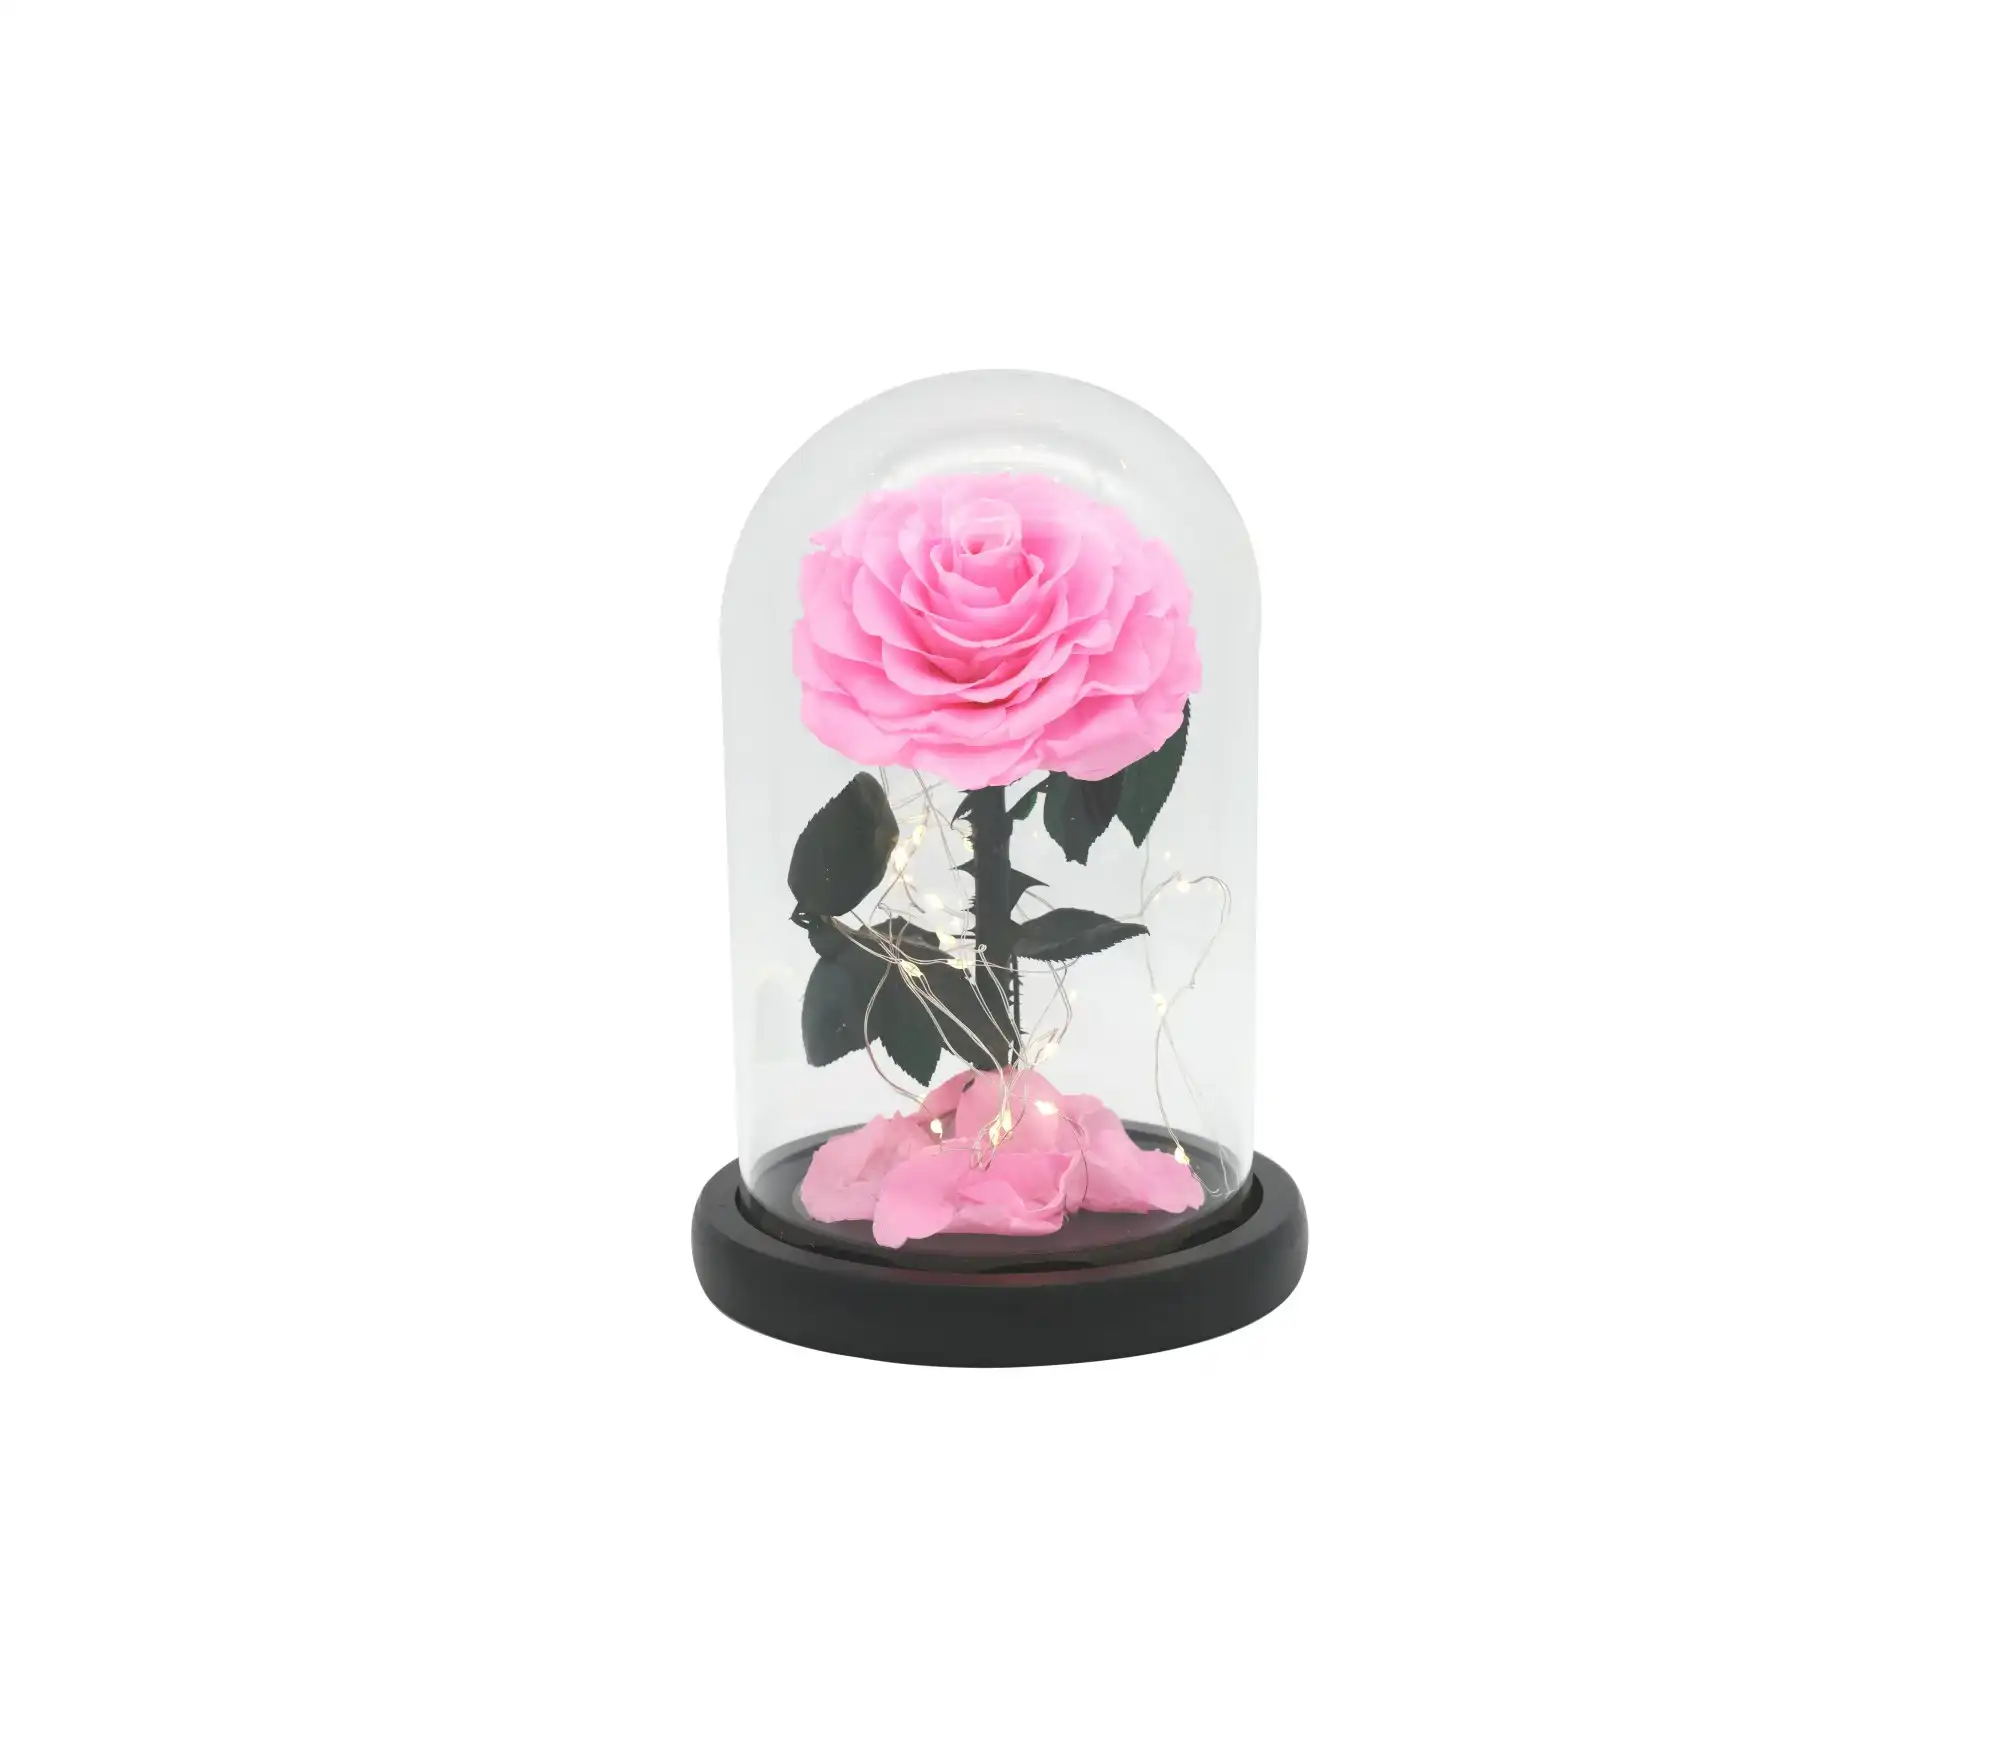 Vistara Timeless Rose - Natural 20cm Pink Preserved Rose With LED Light